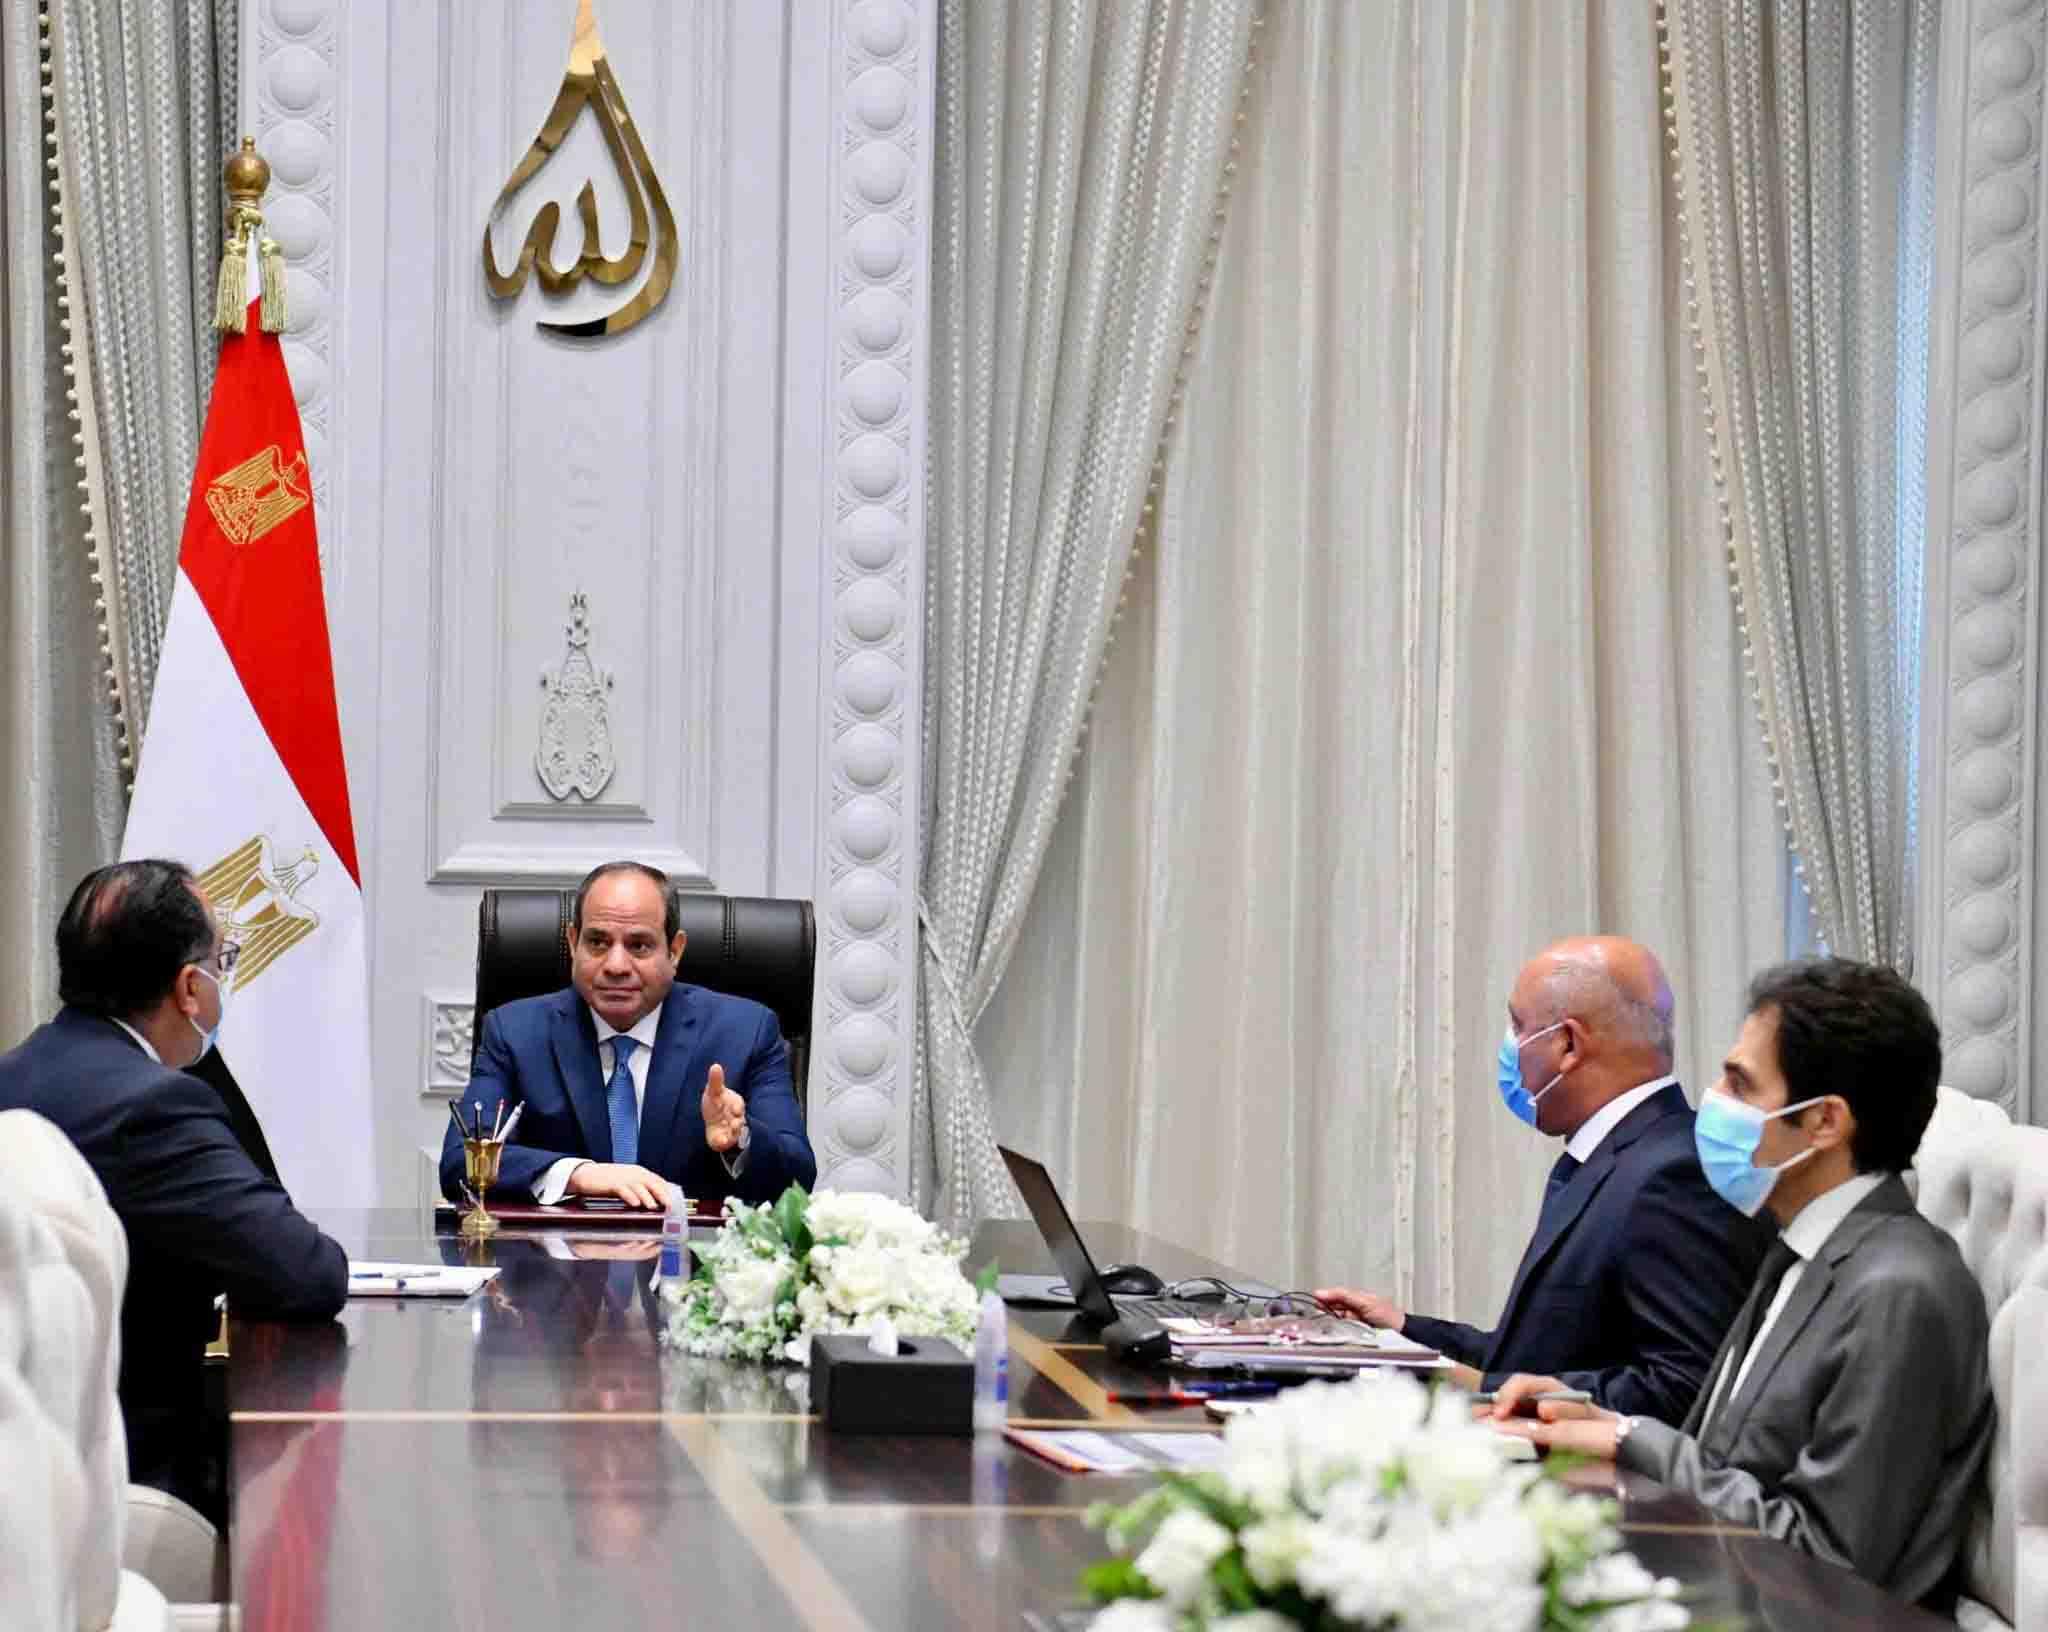 الرئيس عبدالفتاح السيسي خلال الاجتماع